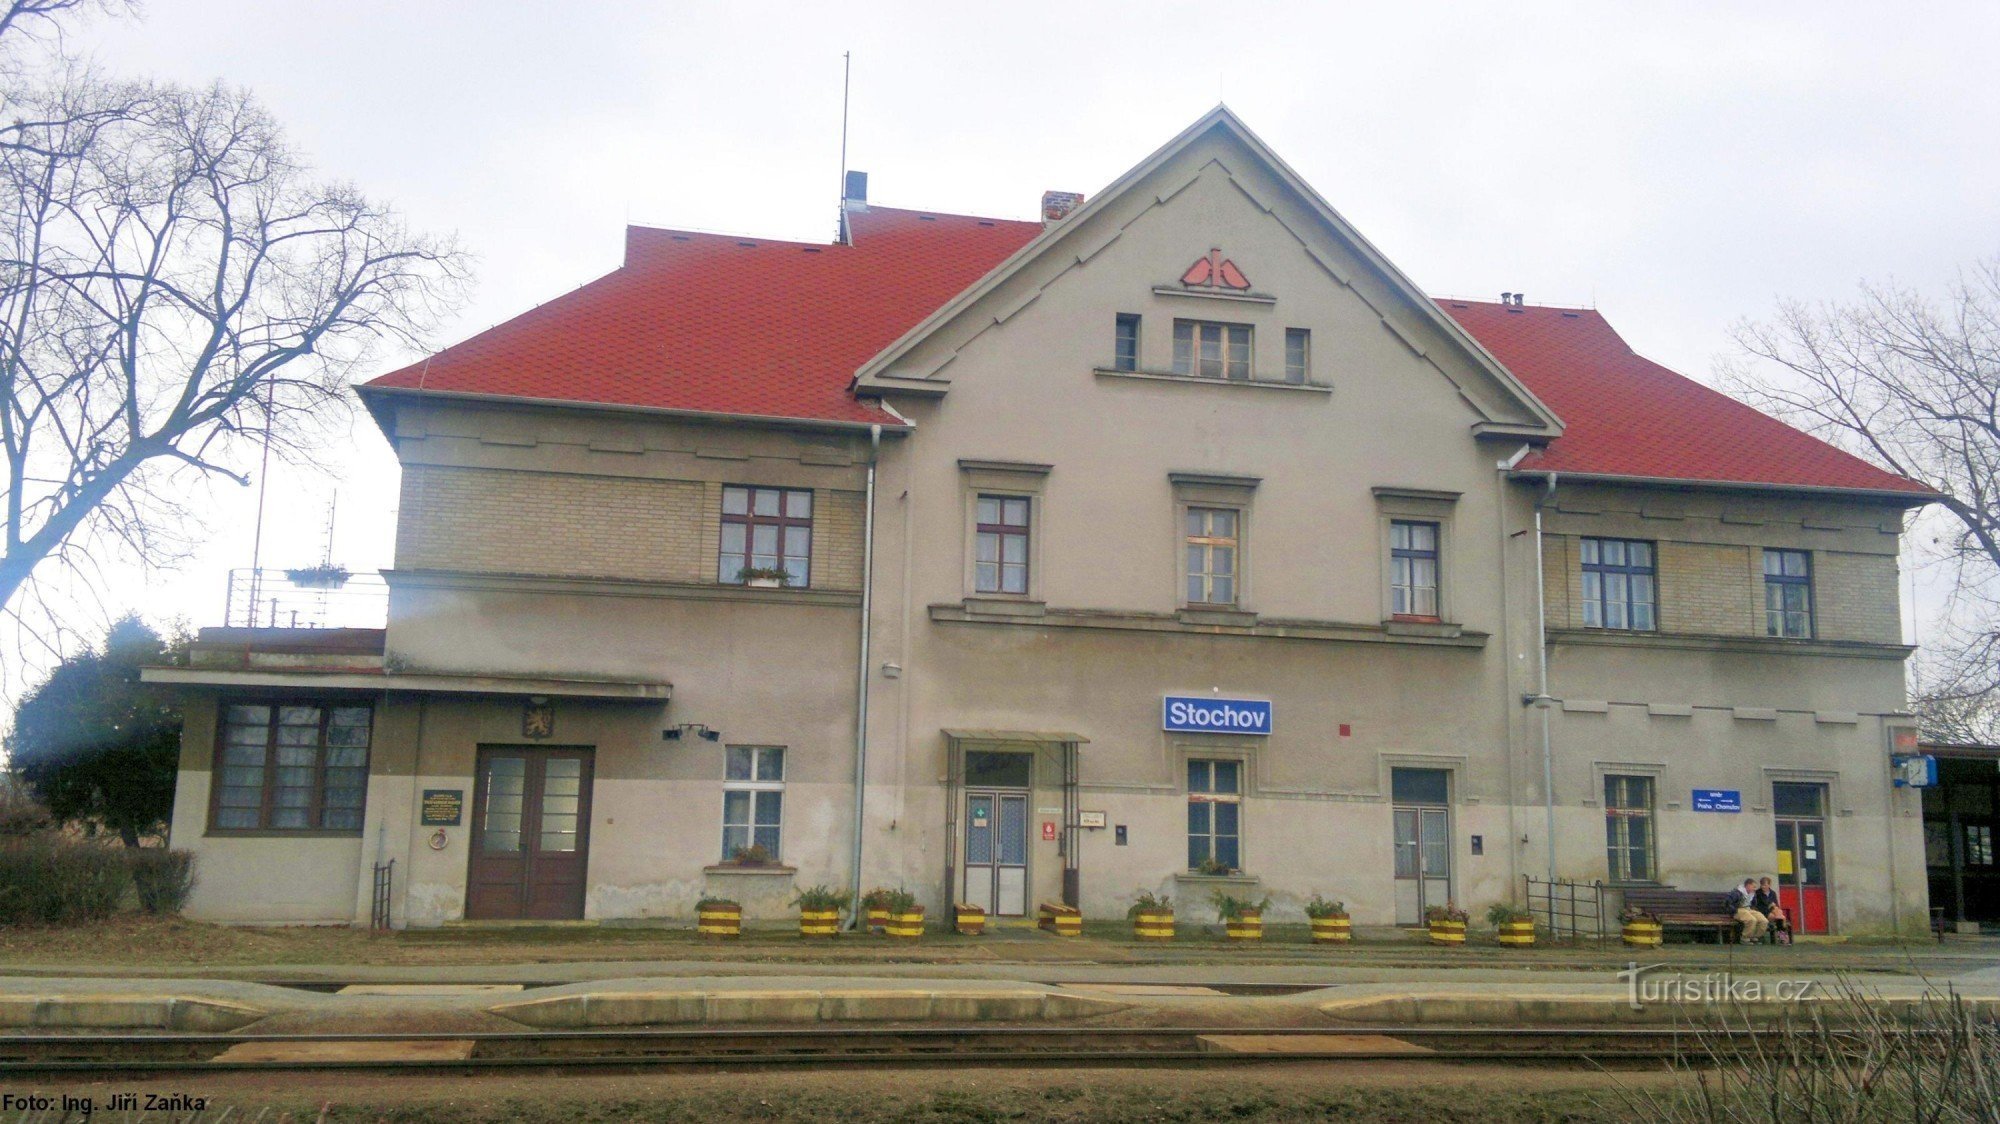 Σταθμός Stochov